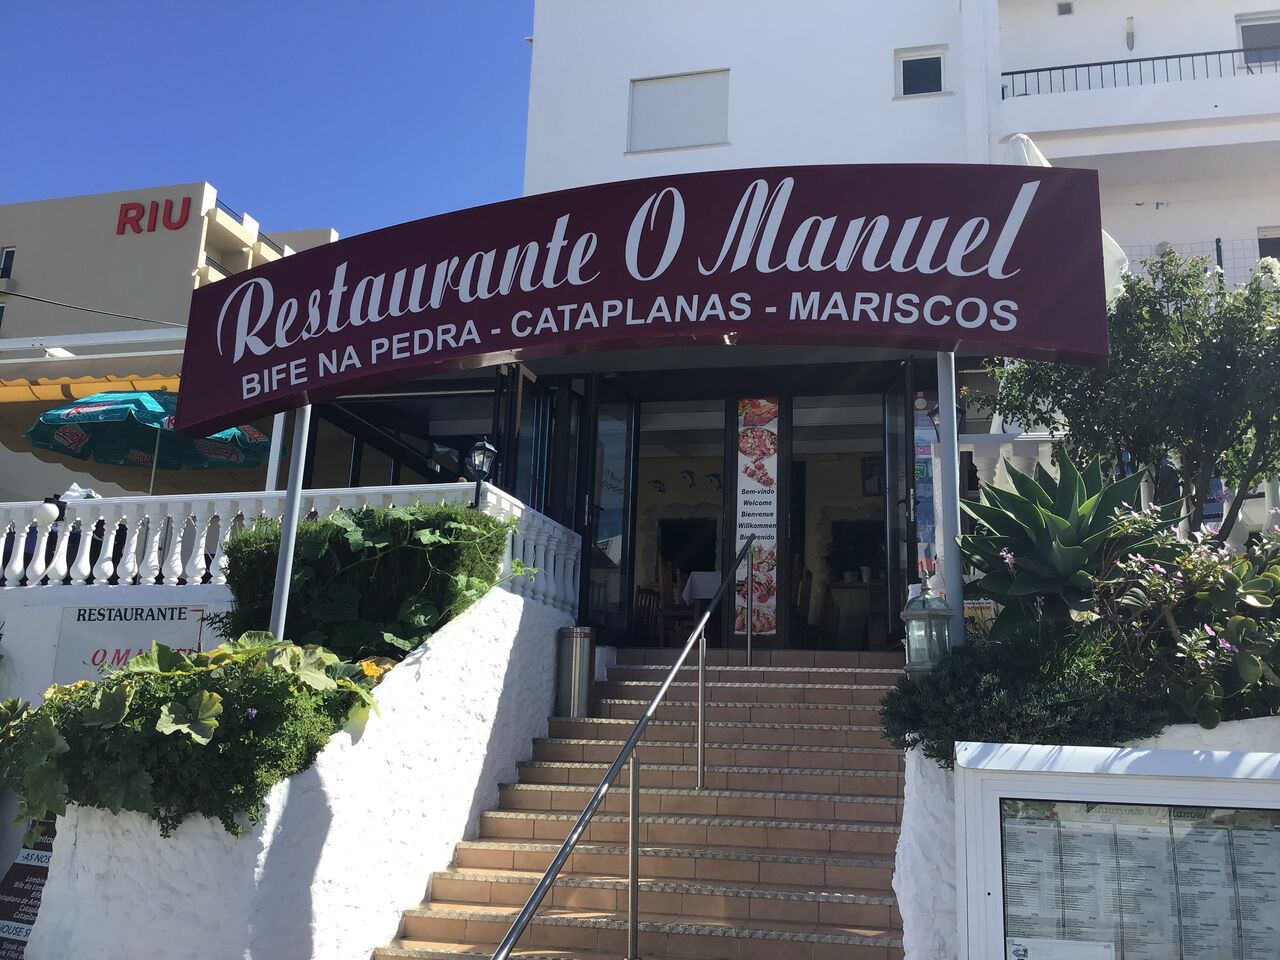 Restaurante O Manuel - Restaurant Albufeira | Portuguese ...